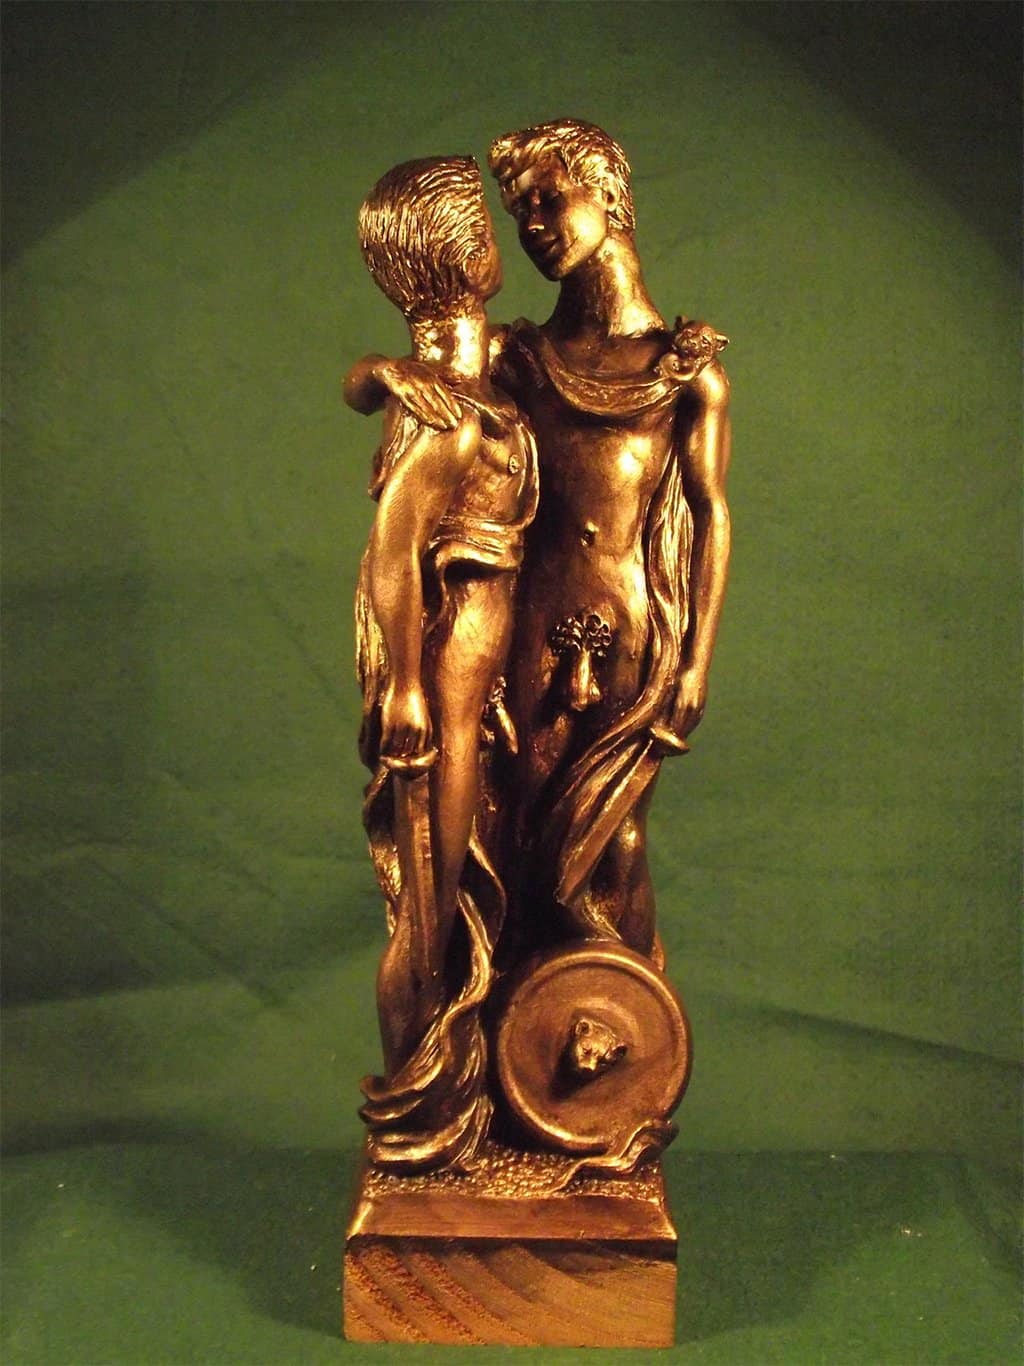 تمثال يصور العلاقة بين المرشد والمتعلم في اليونان القديمة.